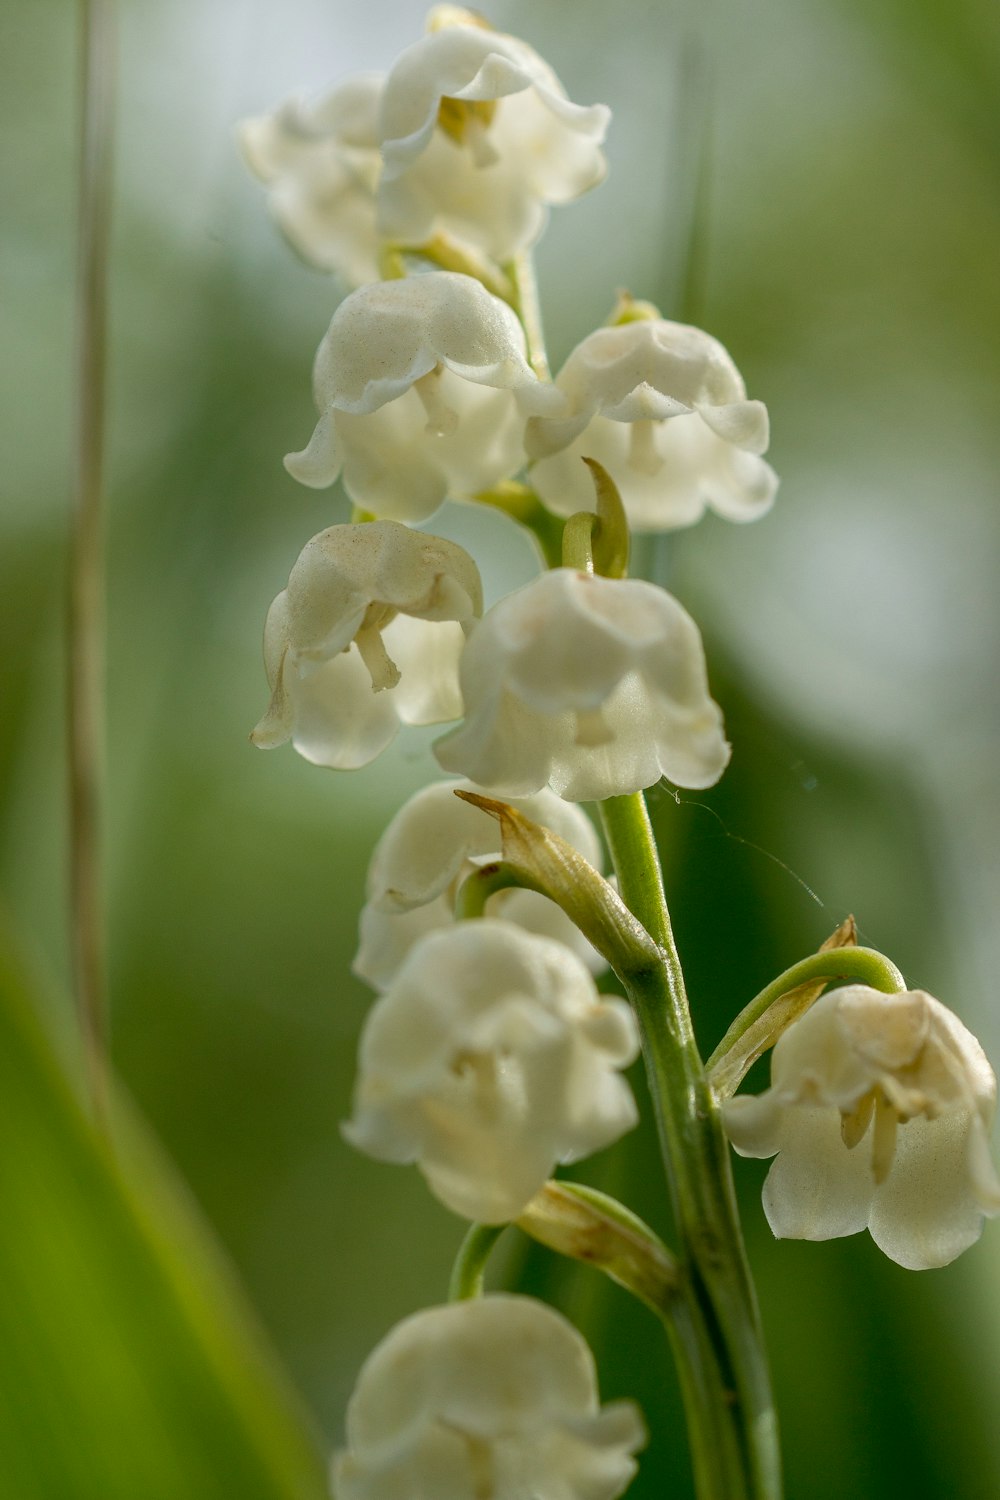 Un primer plano de una flor blanca en un tallo